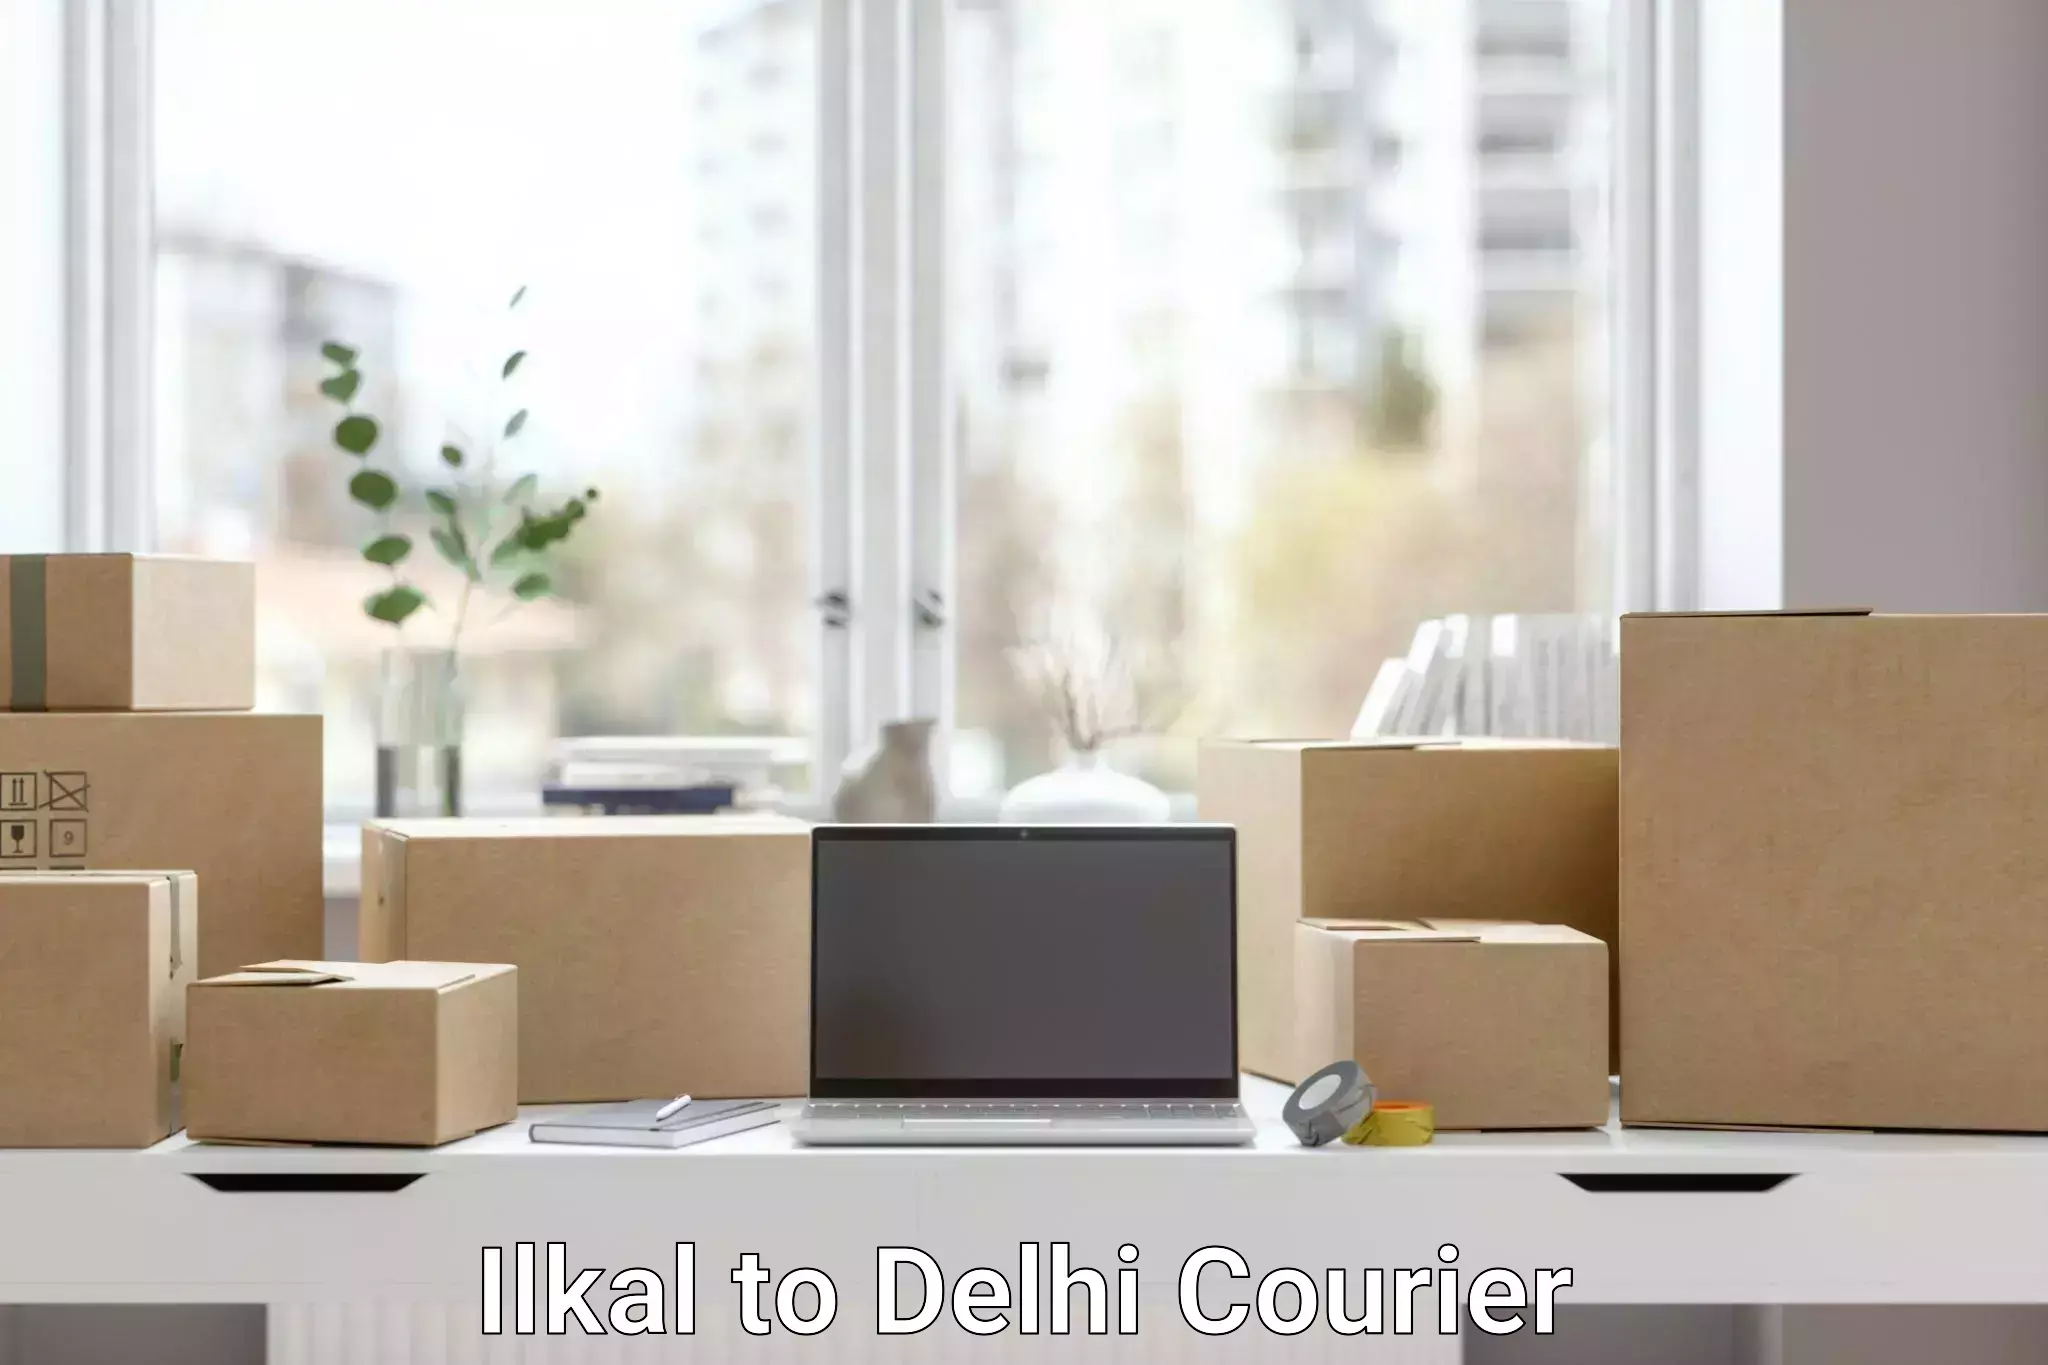 Ocean freight courier Ilkal to Jamia Millia Islamia New Delhi